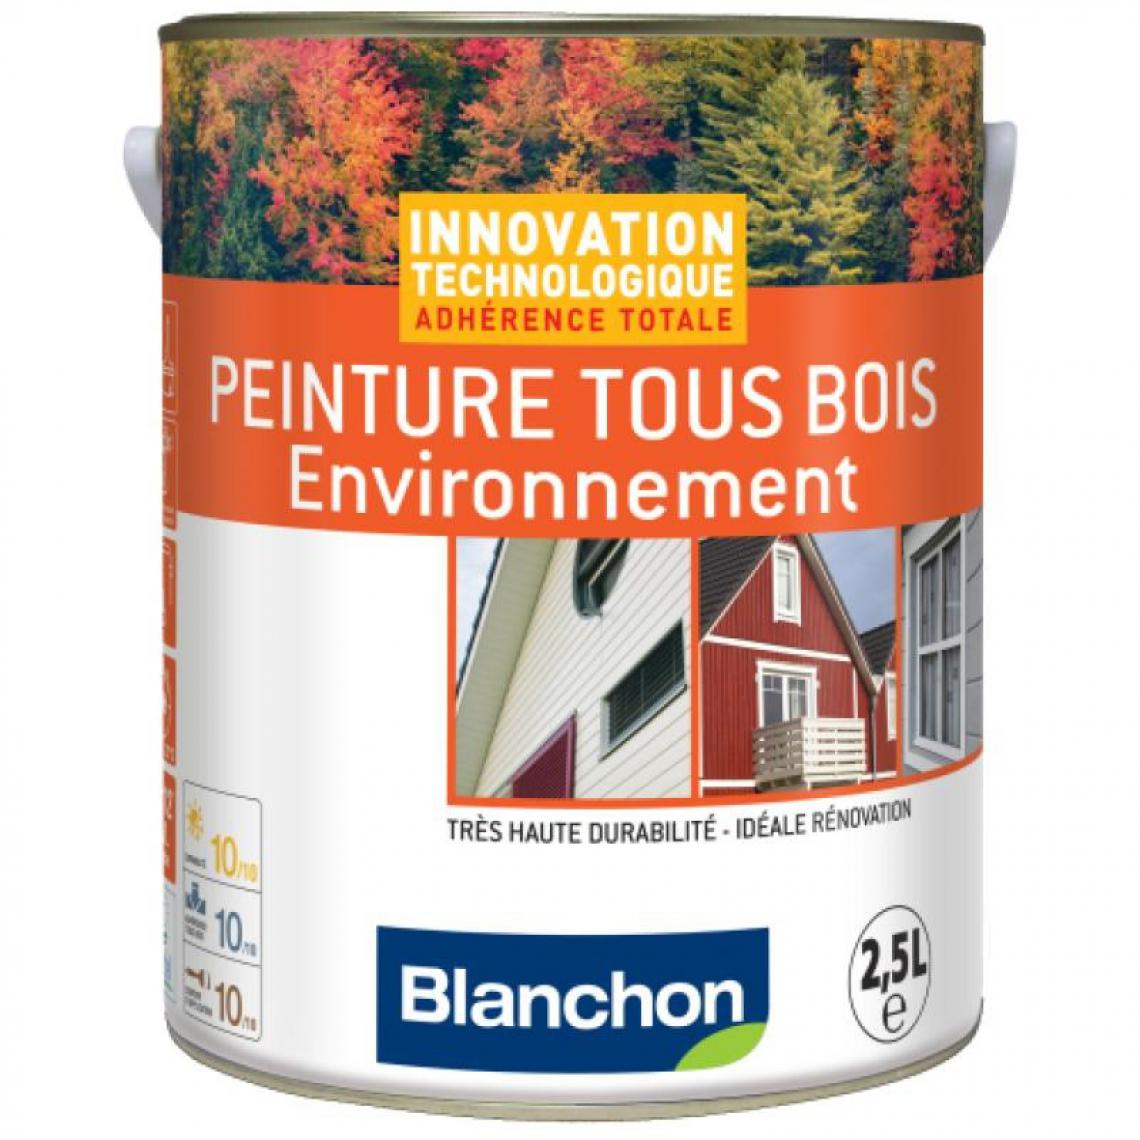 Blanchon - Peinture microporeuse hydrofuge Tous Bois Environnement, gris clair 7035, - Produit de finition pour bois